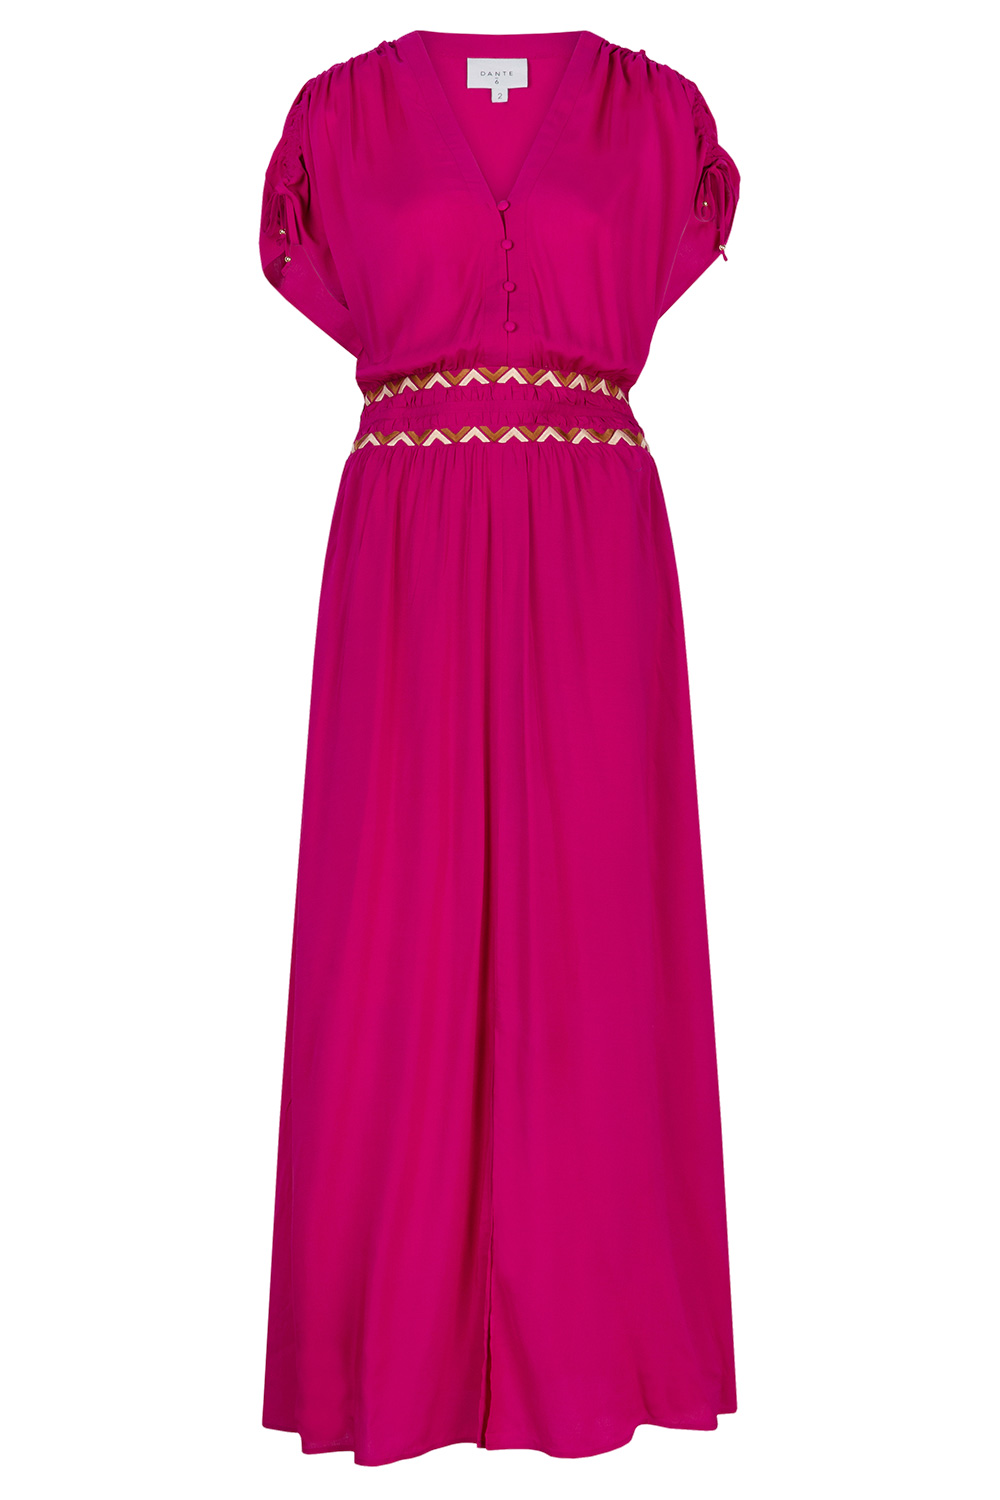 Dante 6 Maxi-jurk met embroidery Imperia roze